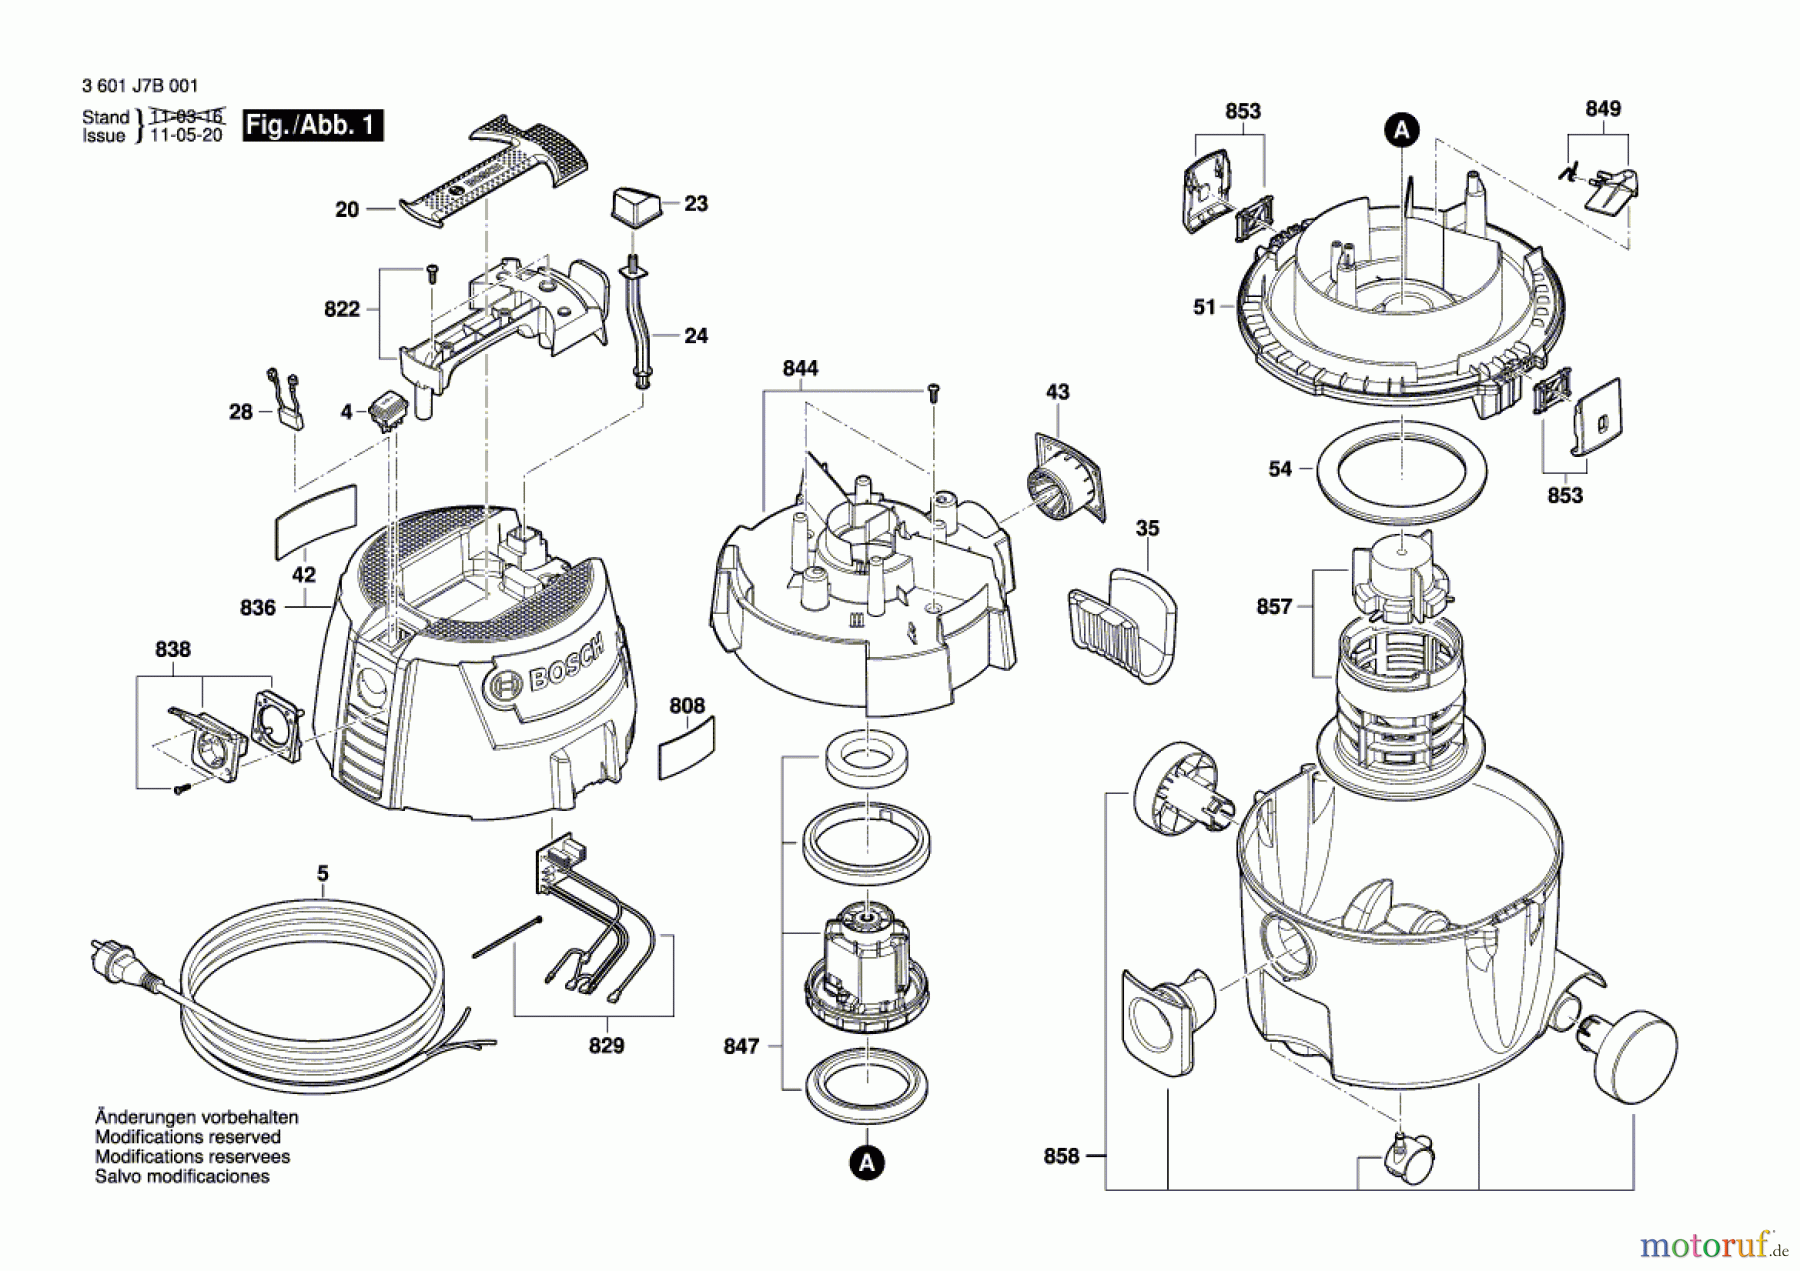  Bosch Werkzeug Allzwecksauger GAS 1200 L Seite 1